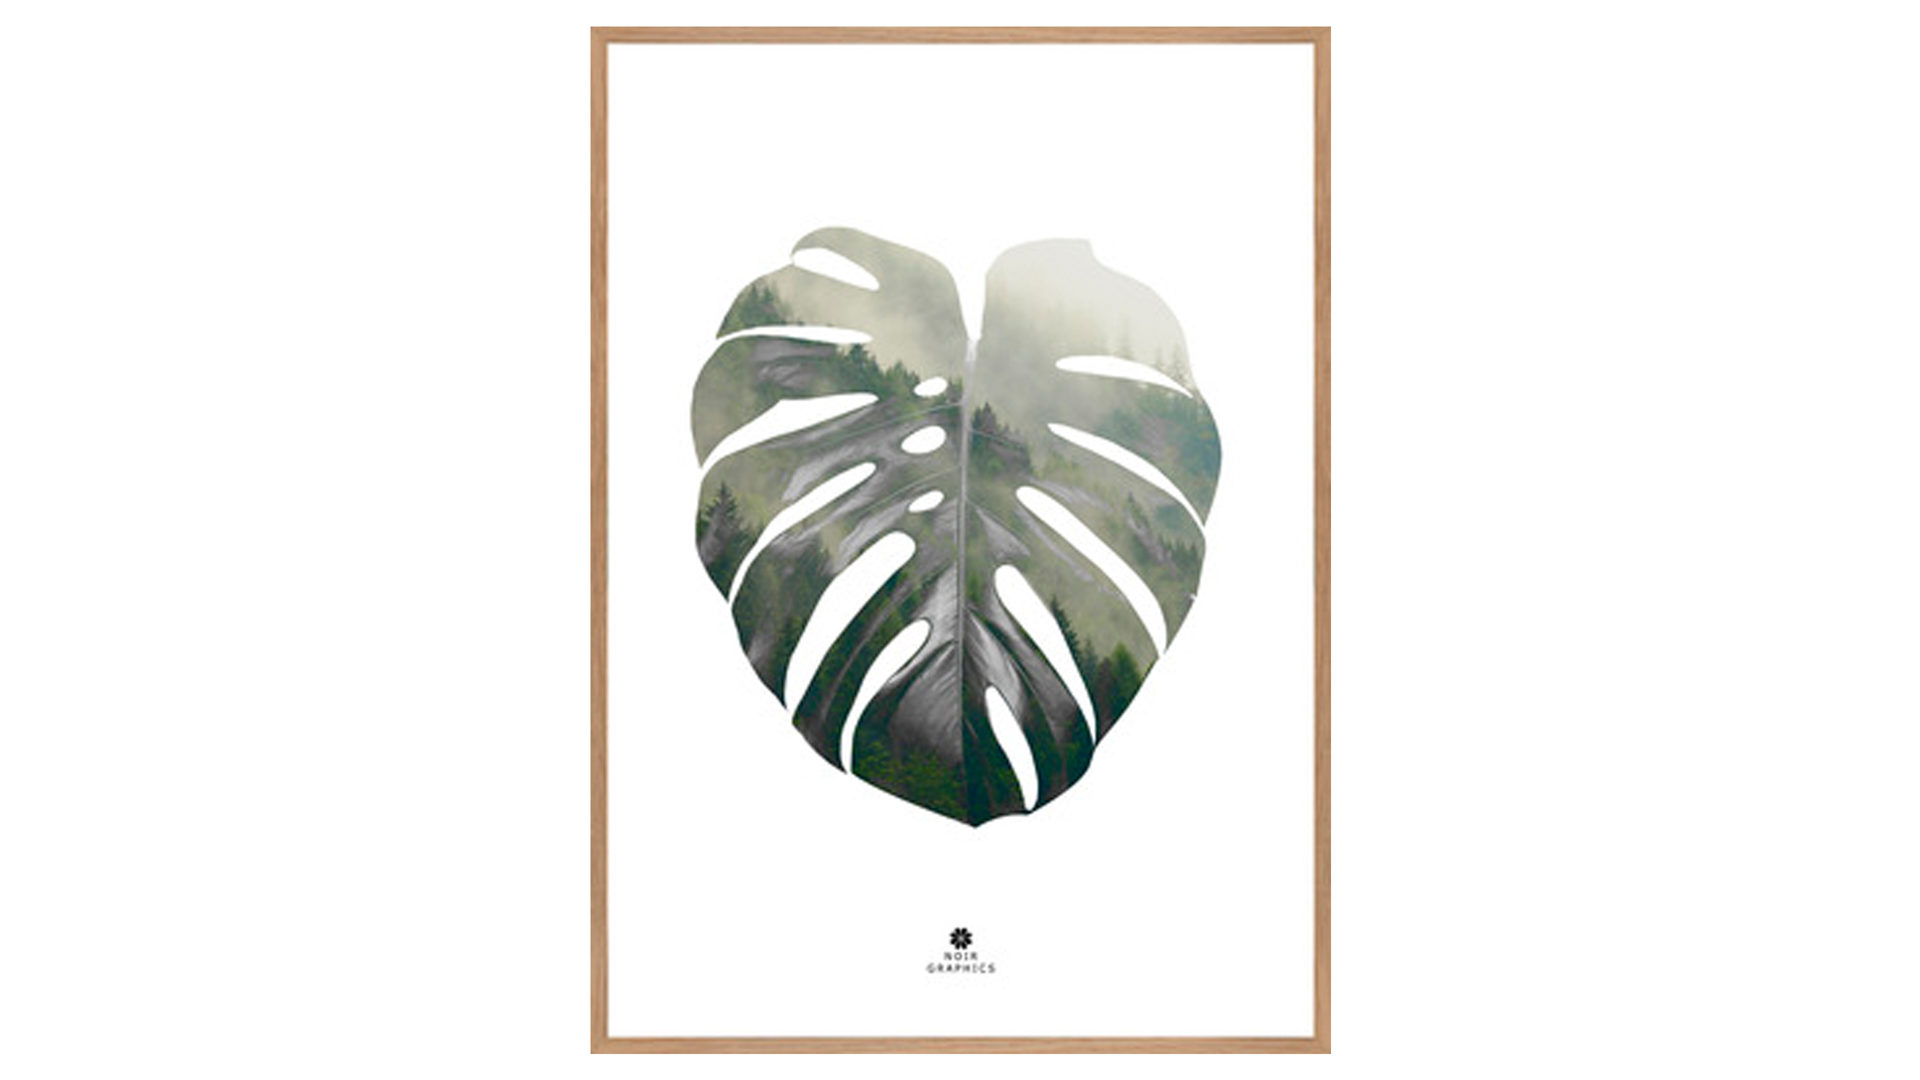 Kunstdruck Malerifabrikken aus Karton / Papier / Pappe in Dunkelgrün Kunstdruck Monstera leaf Seidenpapier, Glas & Eichenholz – ca. 50 x 70 cm